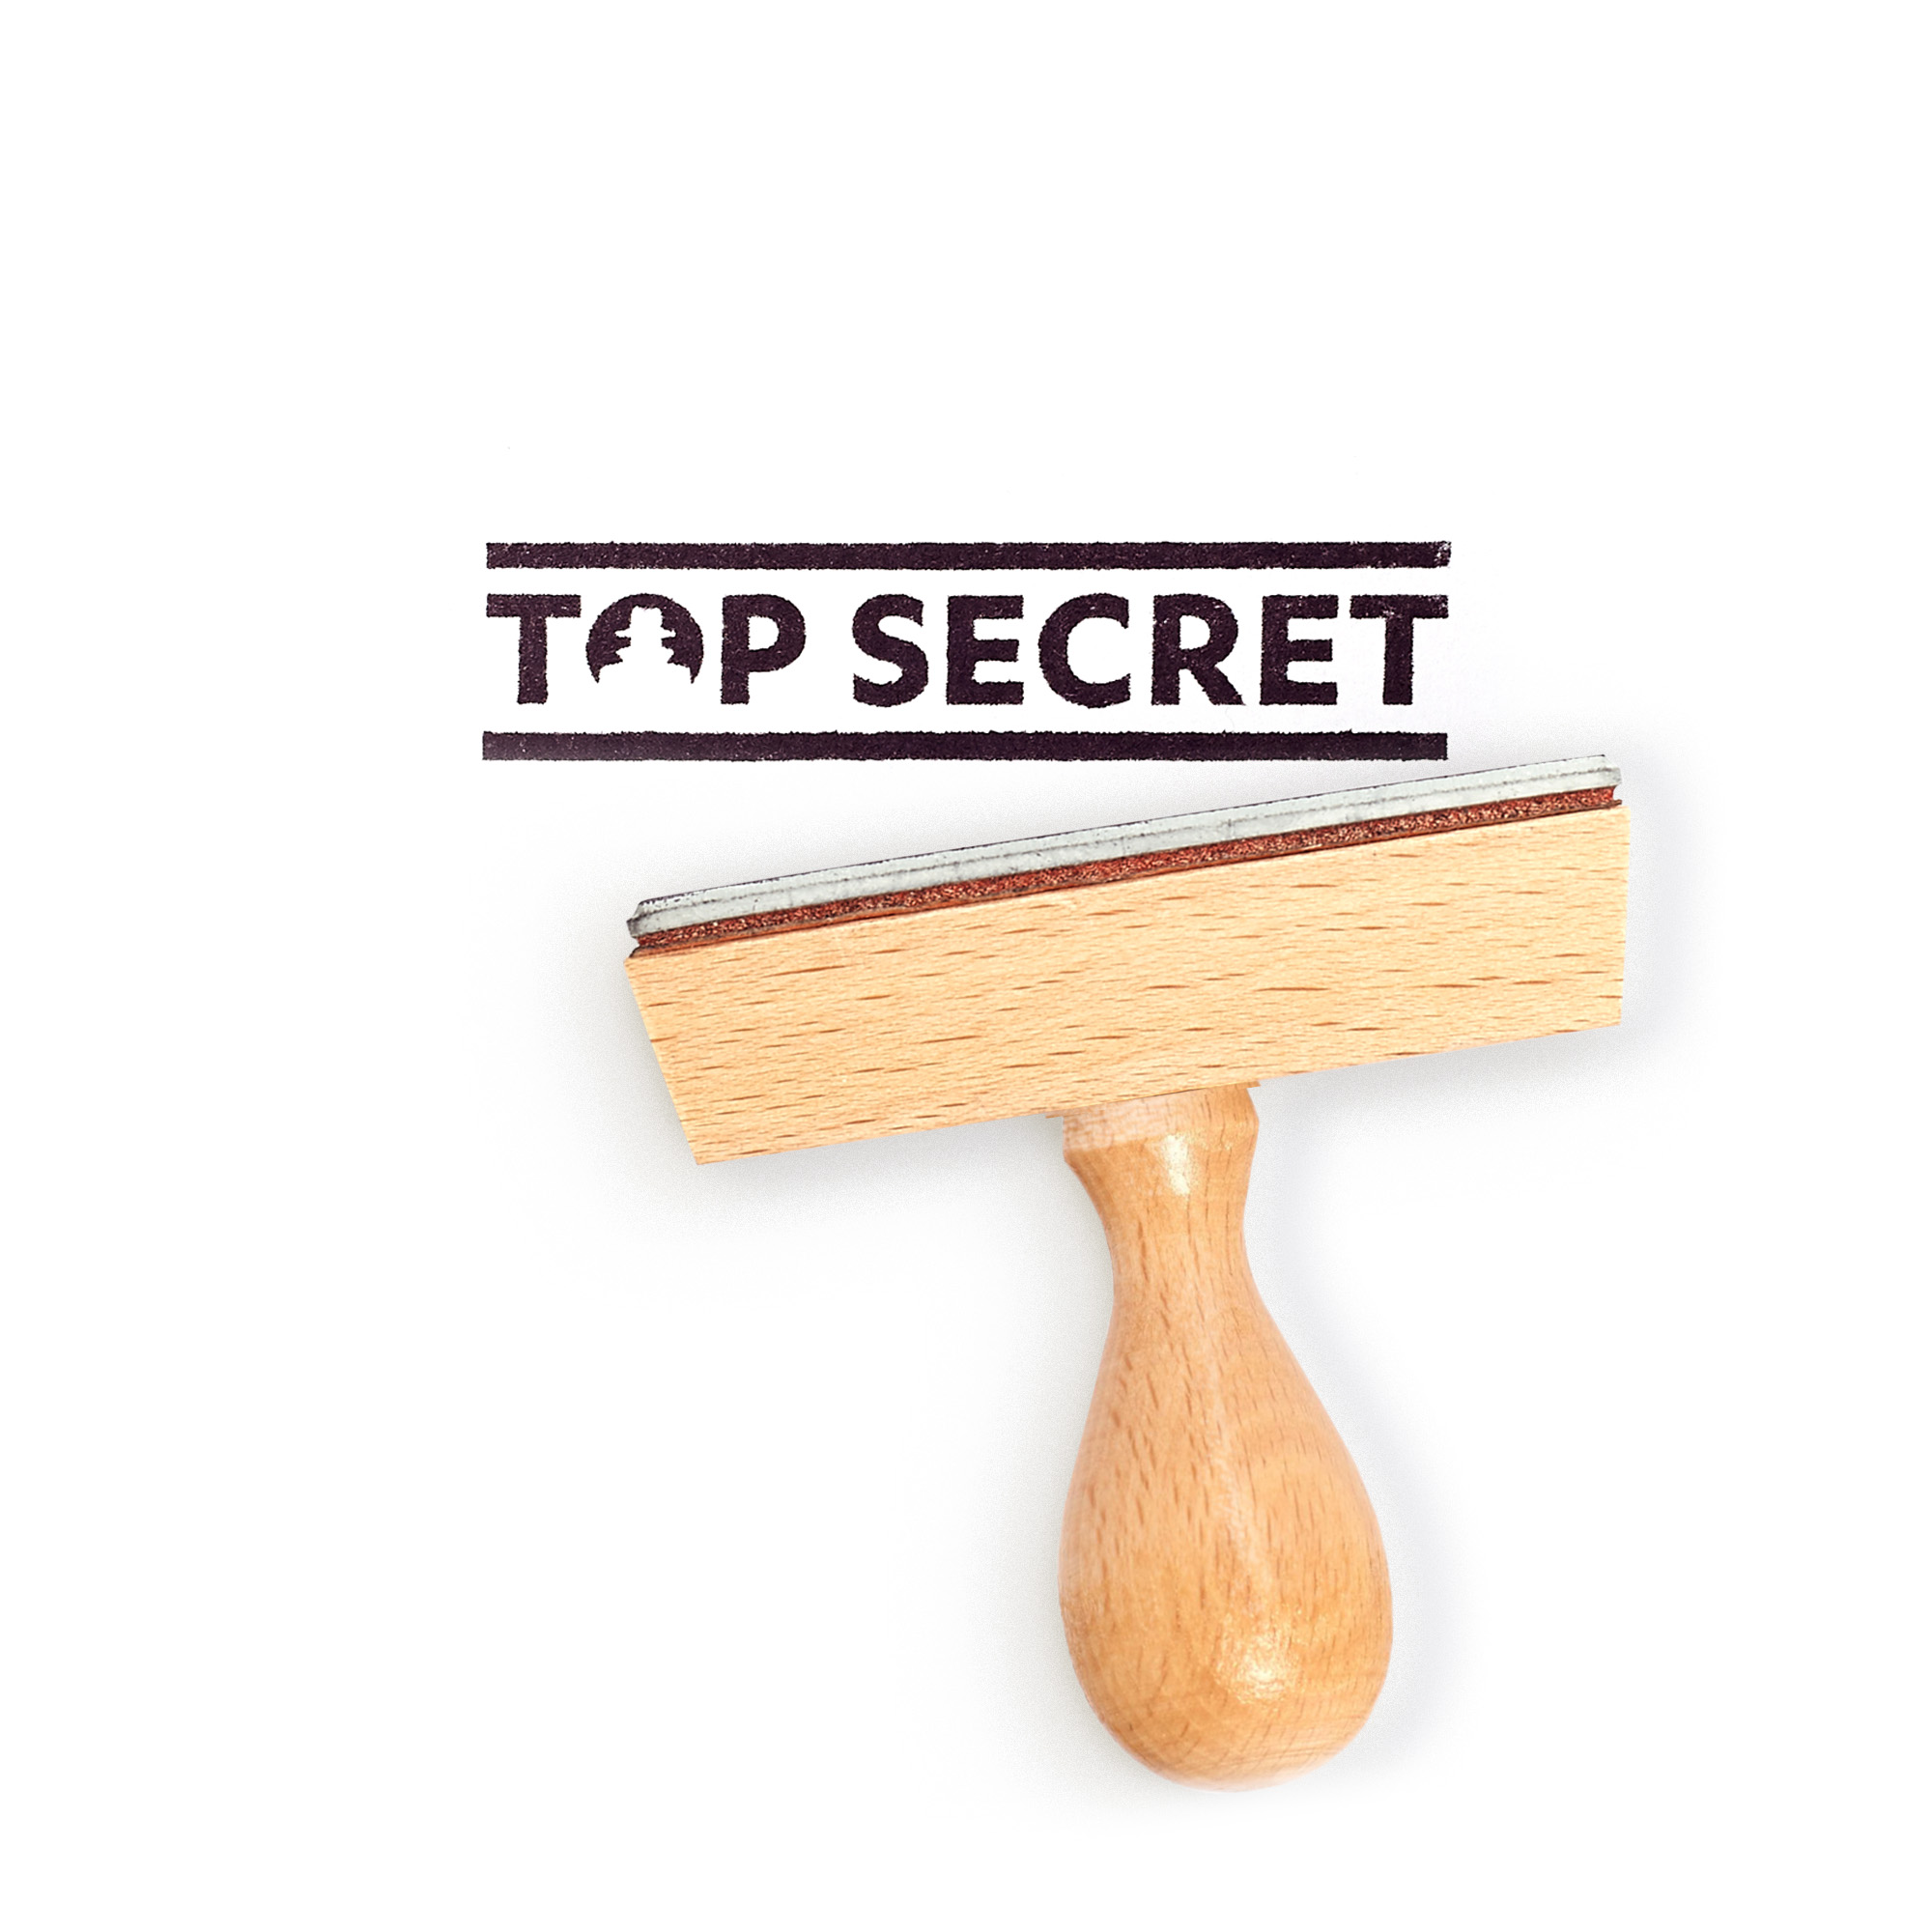 Rubber stamp "Top secret"